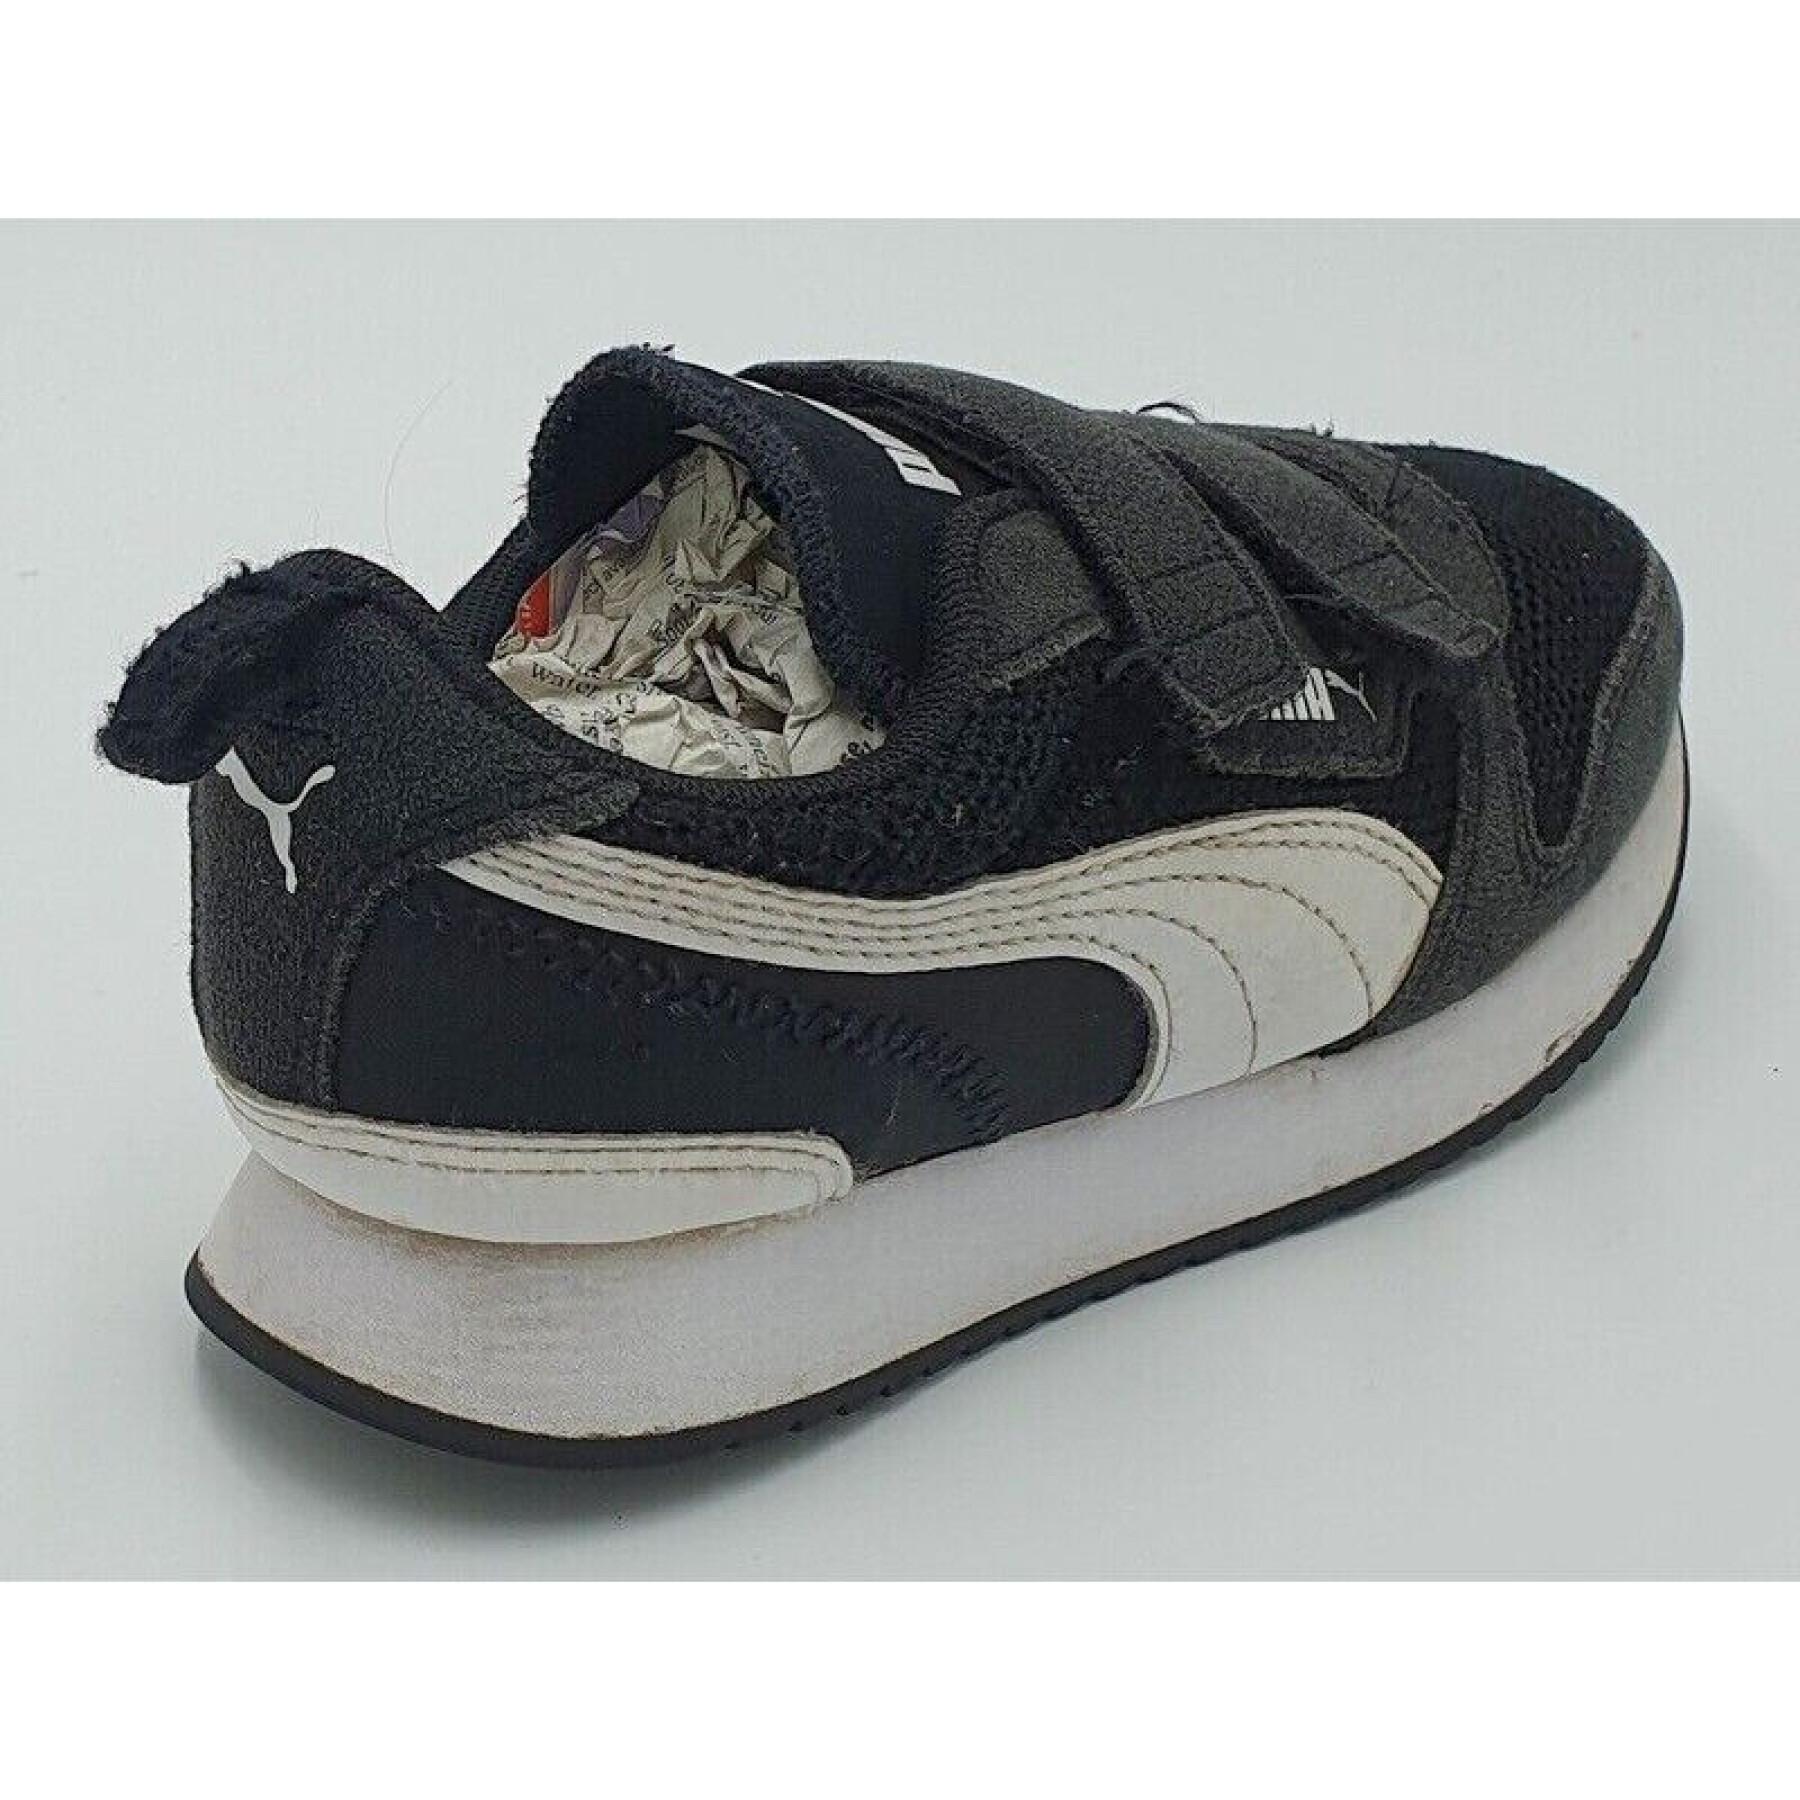 Children's sneakers Puma R78 V Ps E